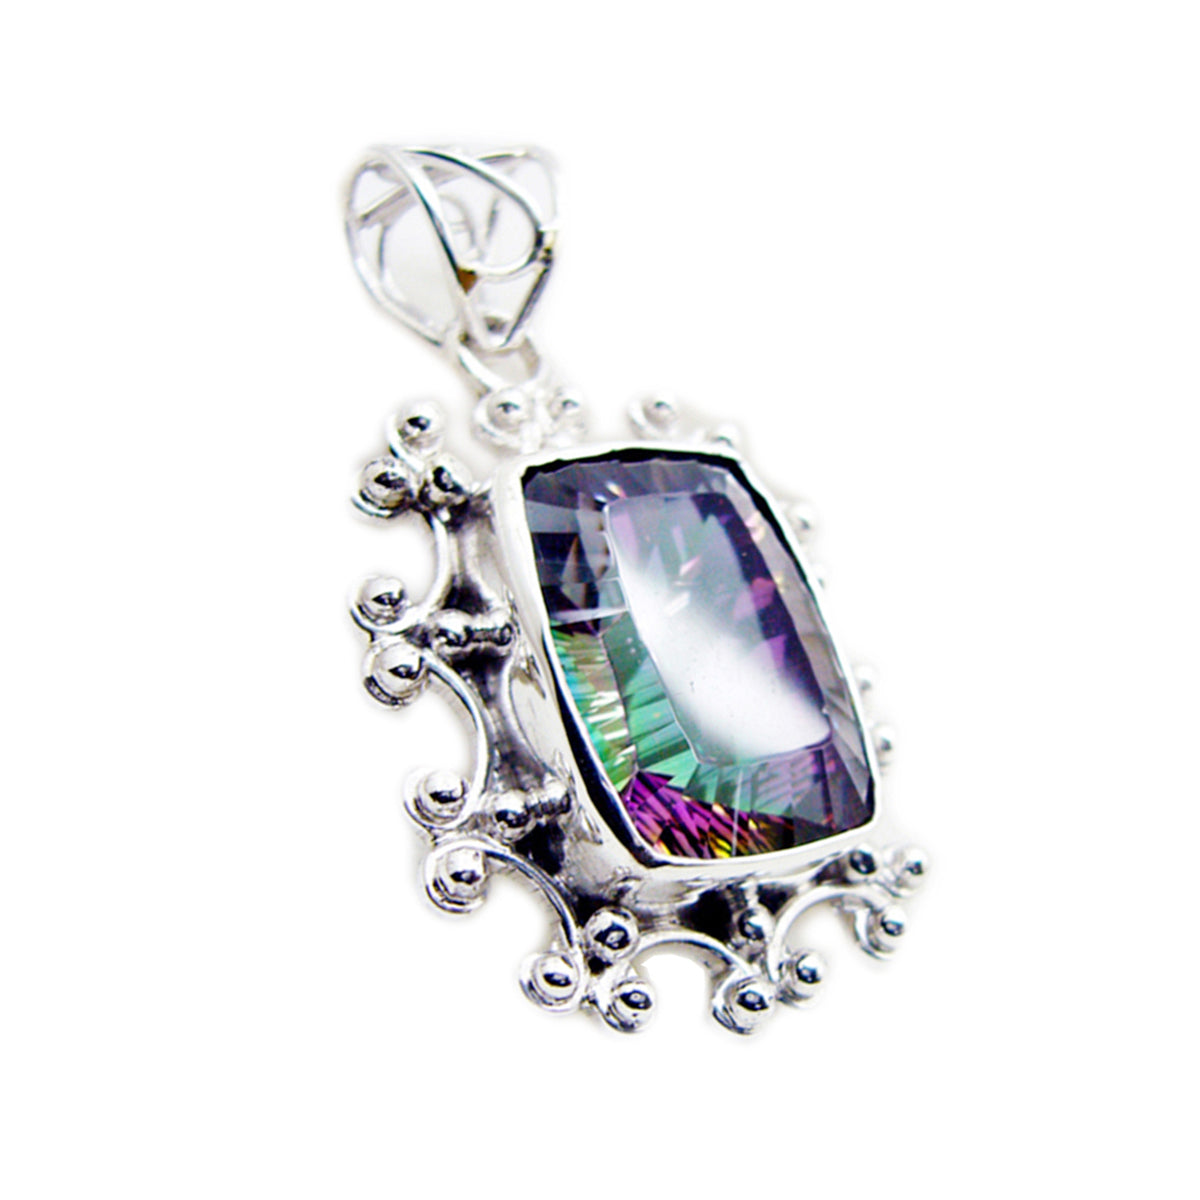 Riyo encantadora piedra preciosa octágono facetado multicolor cuarzo místico colgante de plata de ley regalo para mujer